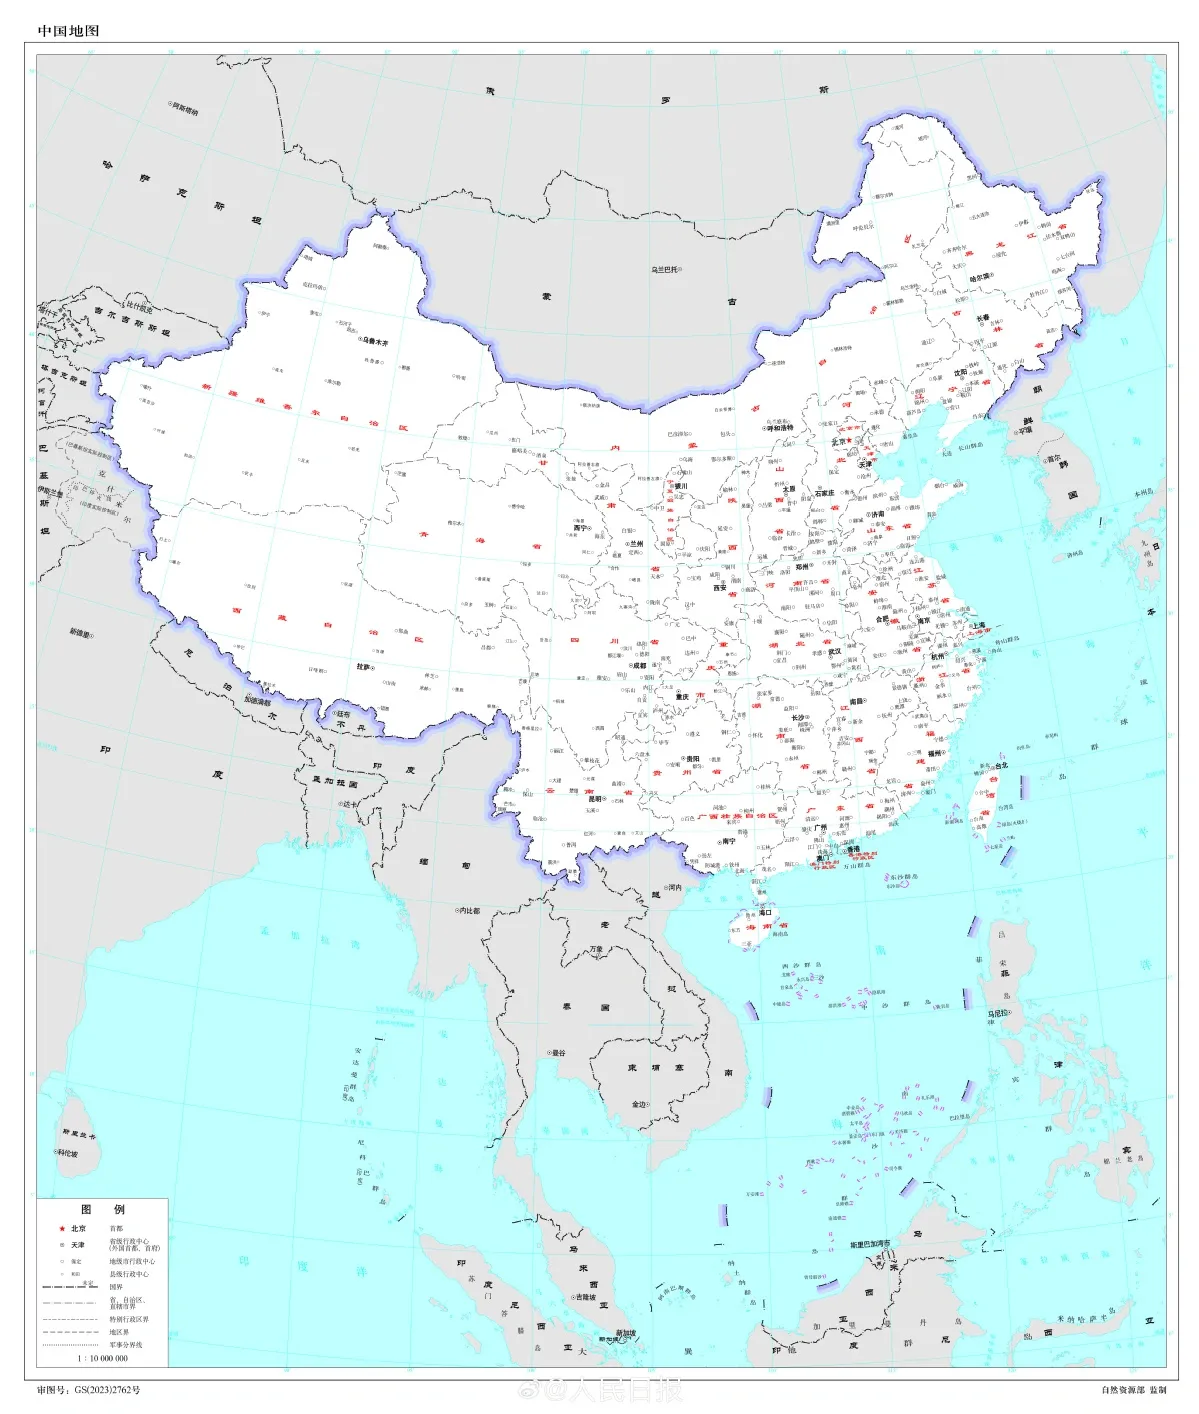 ภาพแสดงแผนที่จีนประจำปี 2023